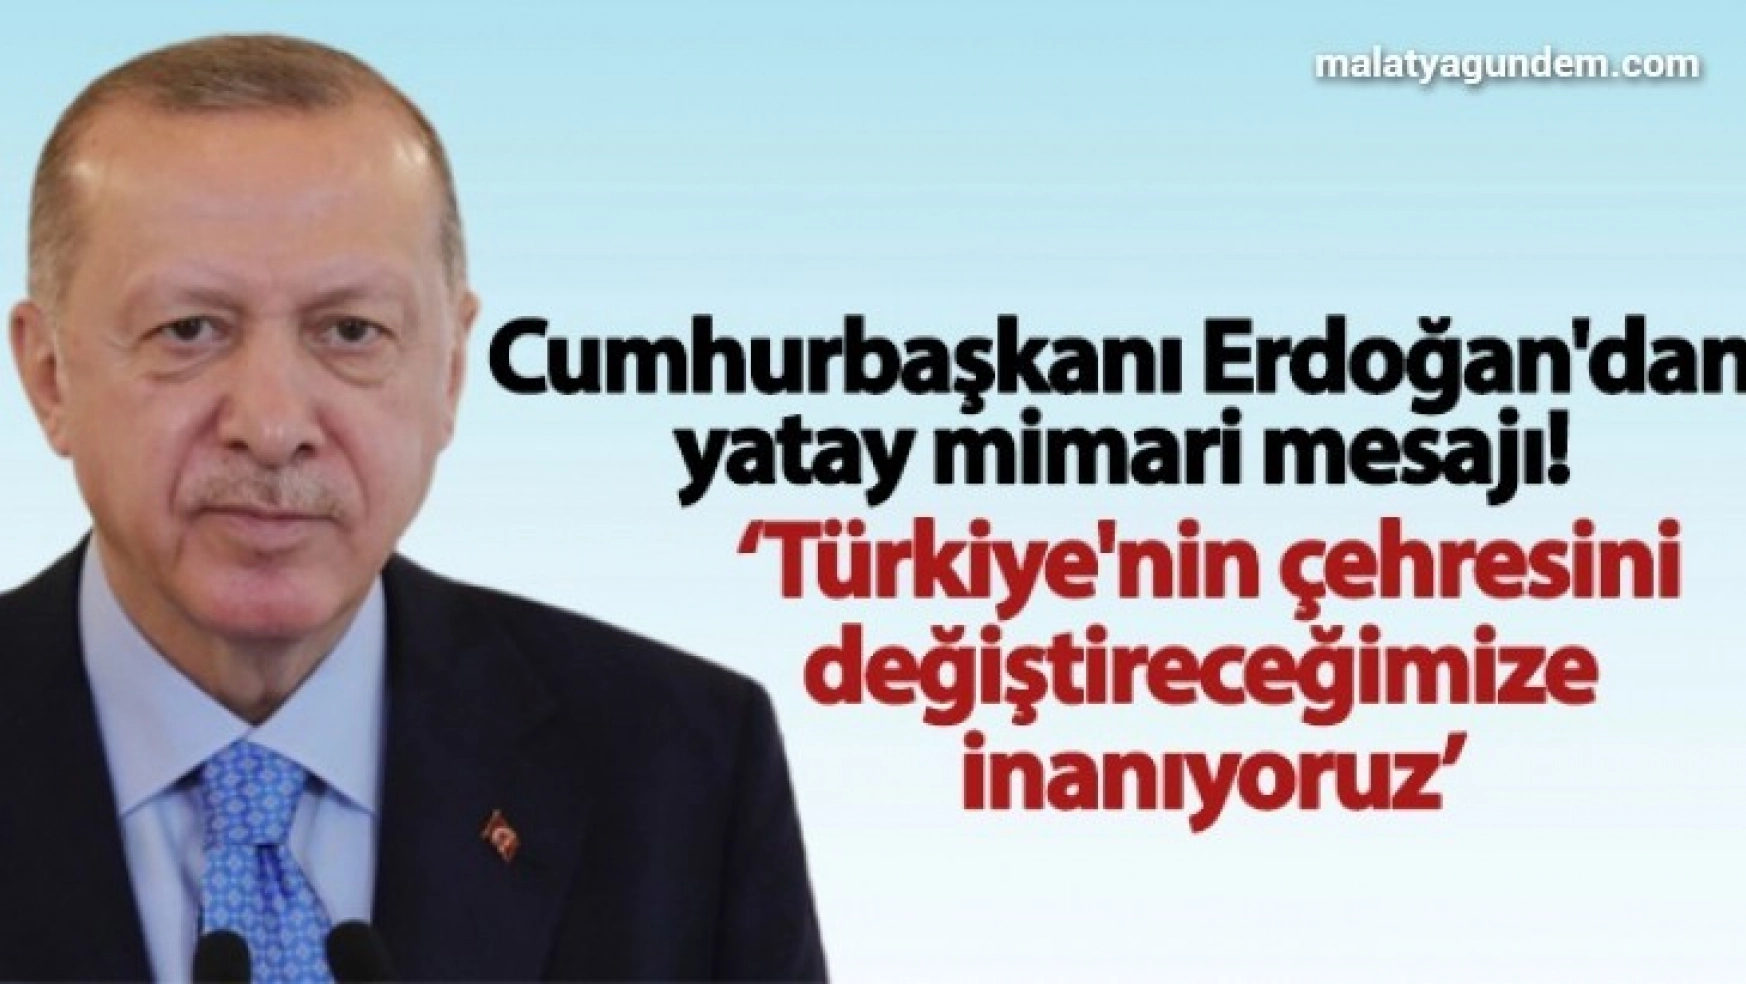 Cumhurbaşkanı Erdoğan'dan yatay mimari mesajı!